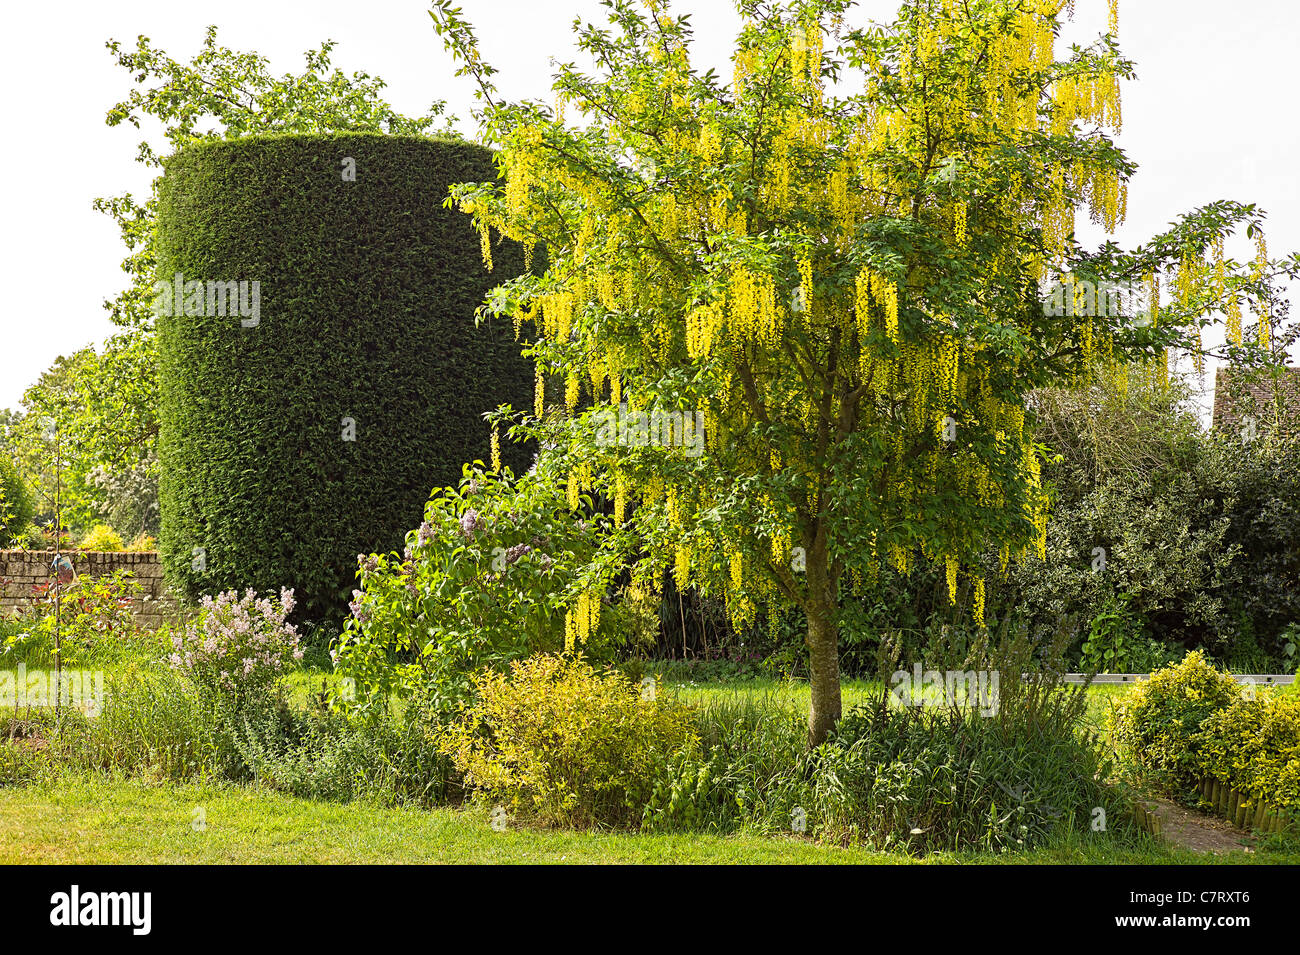 Jardin de printemps avec spécimen en forme de conifères et arbres en fleurs Laburnum en mai Banque D'Images